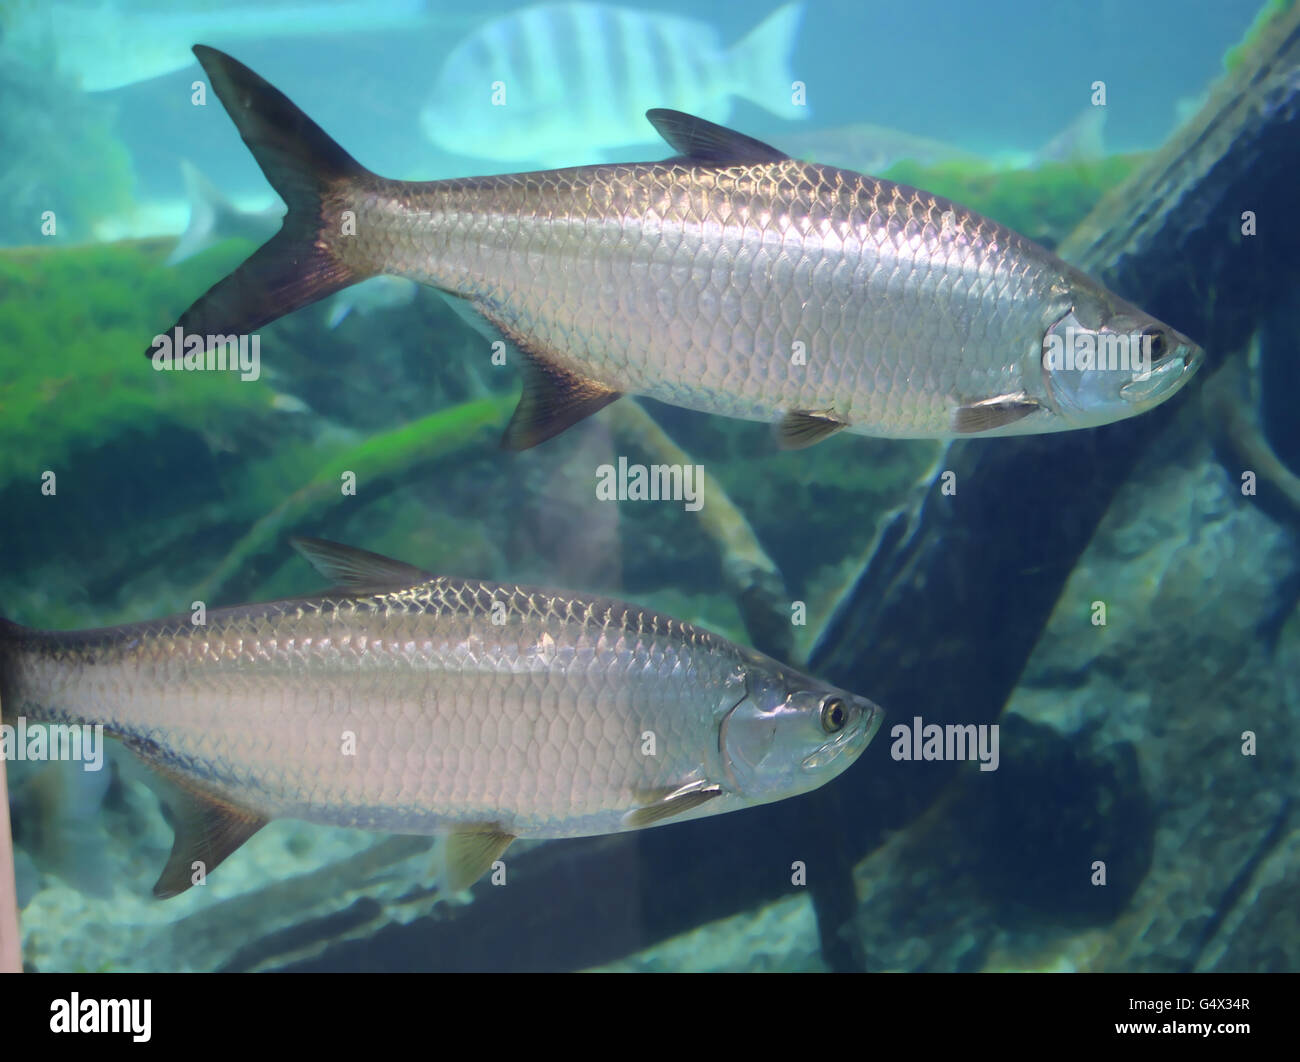 Mackerel fishes underwater Stock Photo